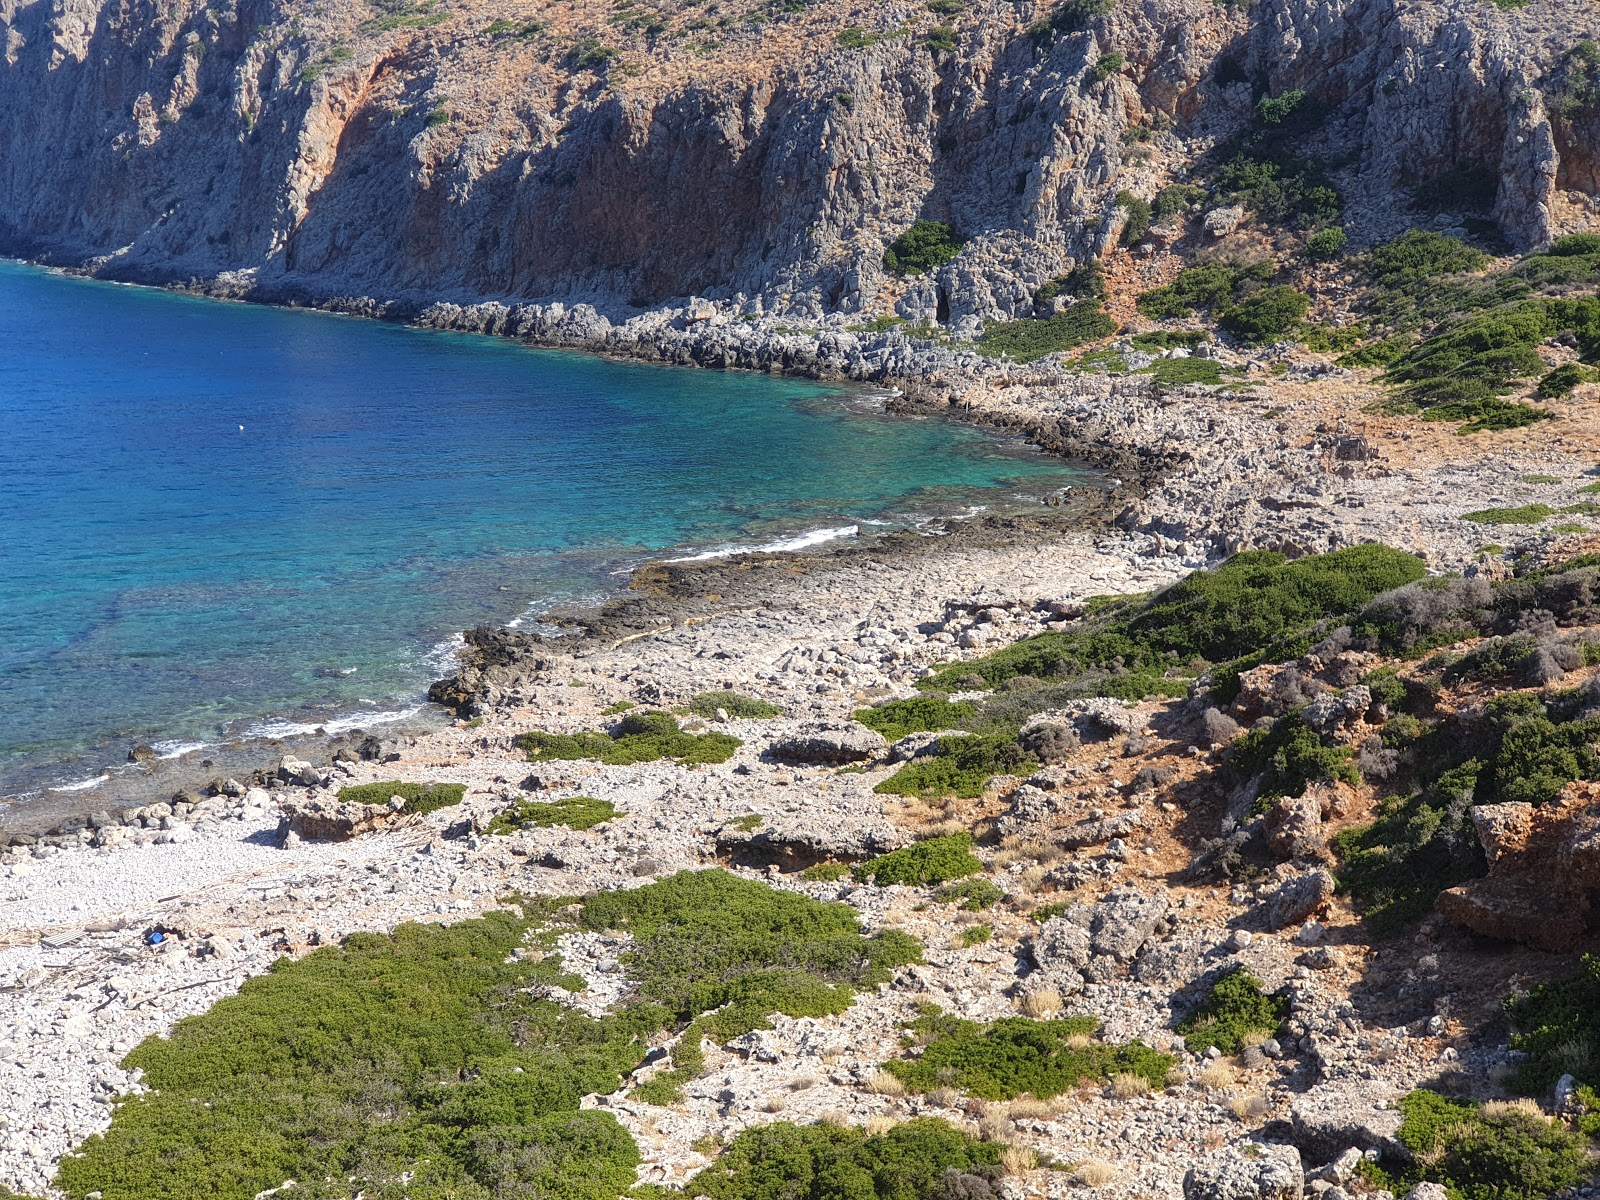 Valokuva Agios Pavlos beachista. sijaitsee luonnonalueella